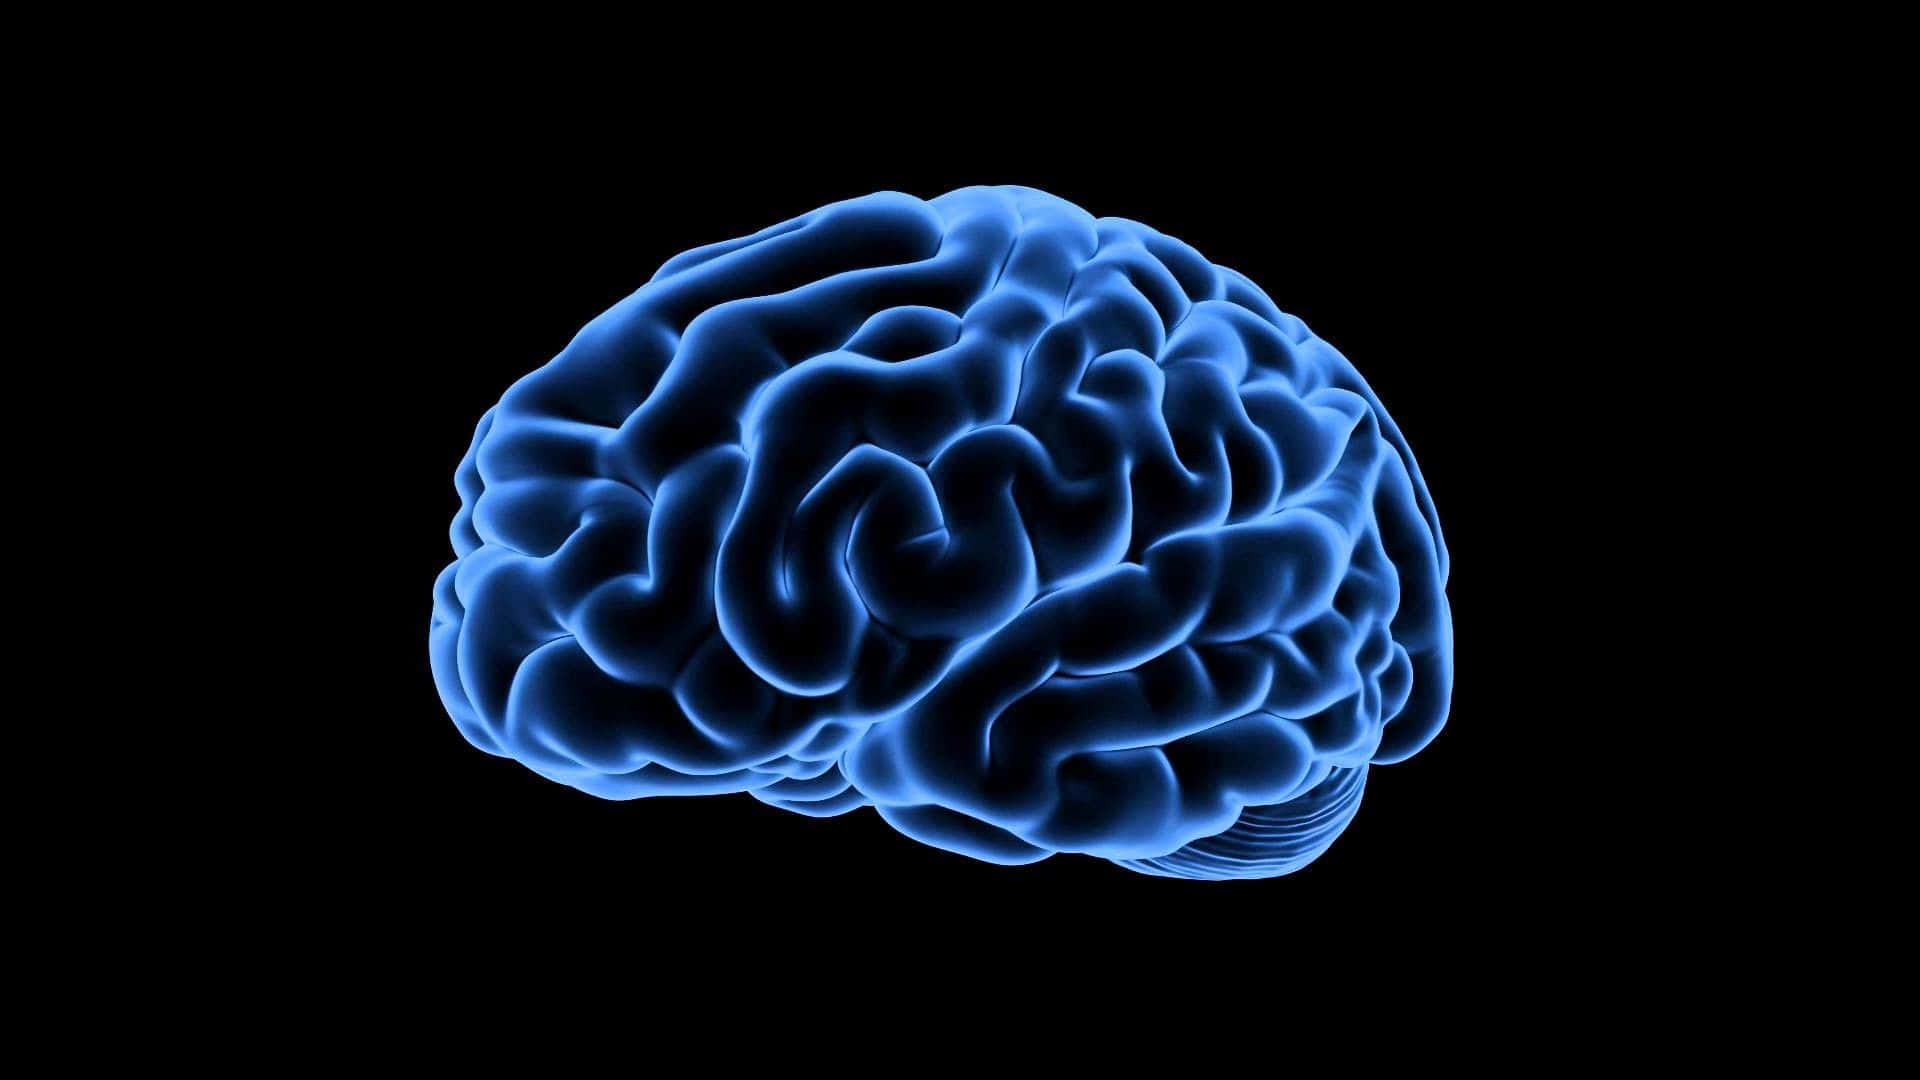 Einblaues Menschliches Gehirn Auf Einem Schwarzen Hintergrund. Wallpaper